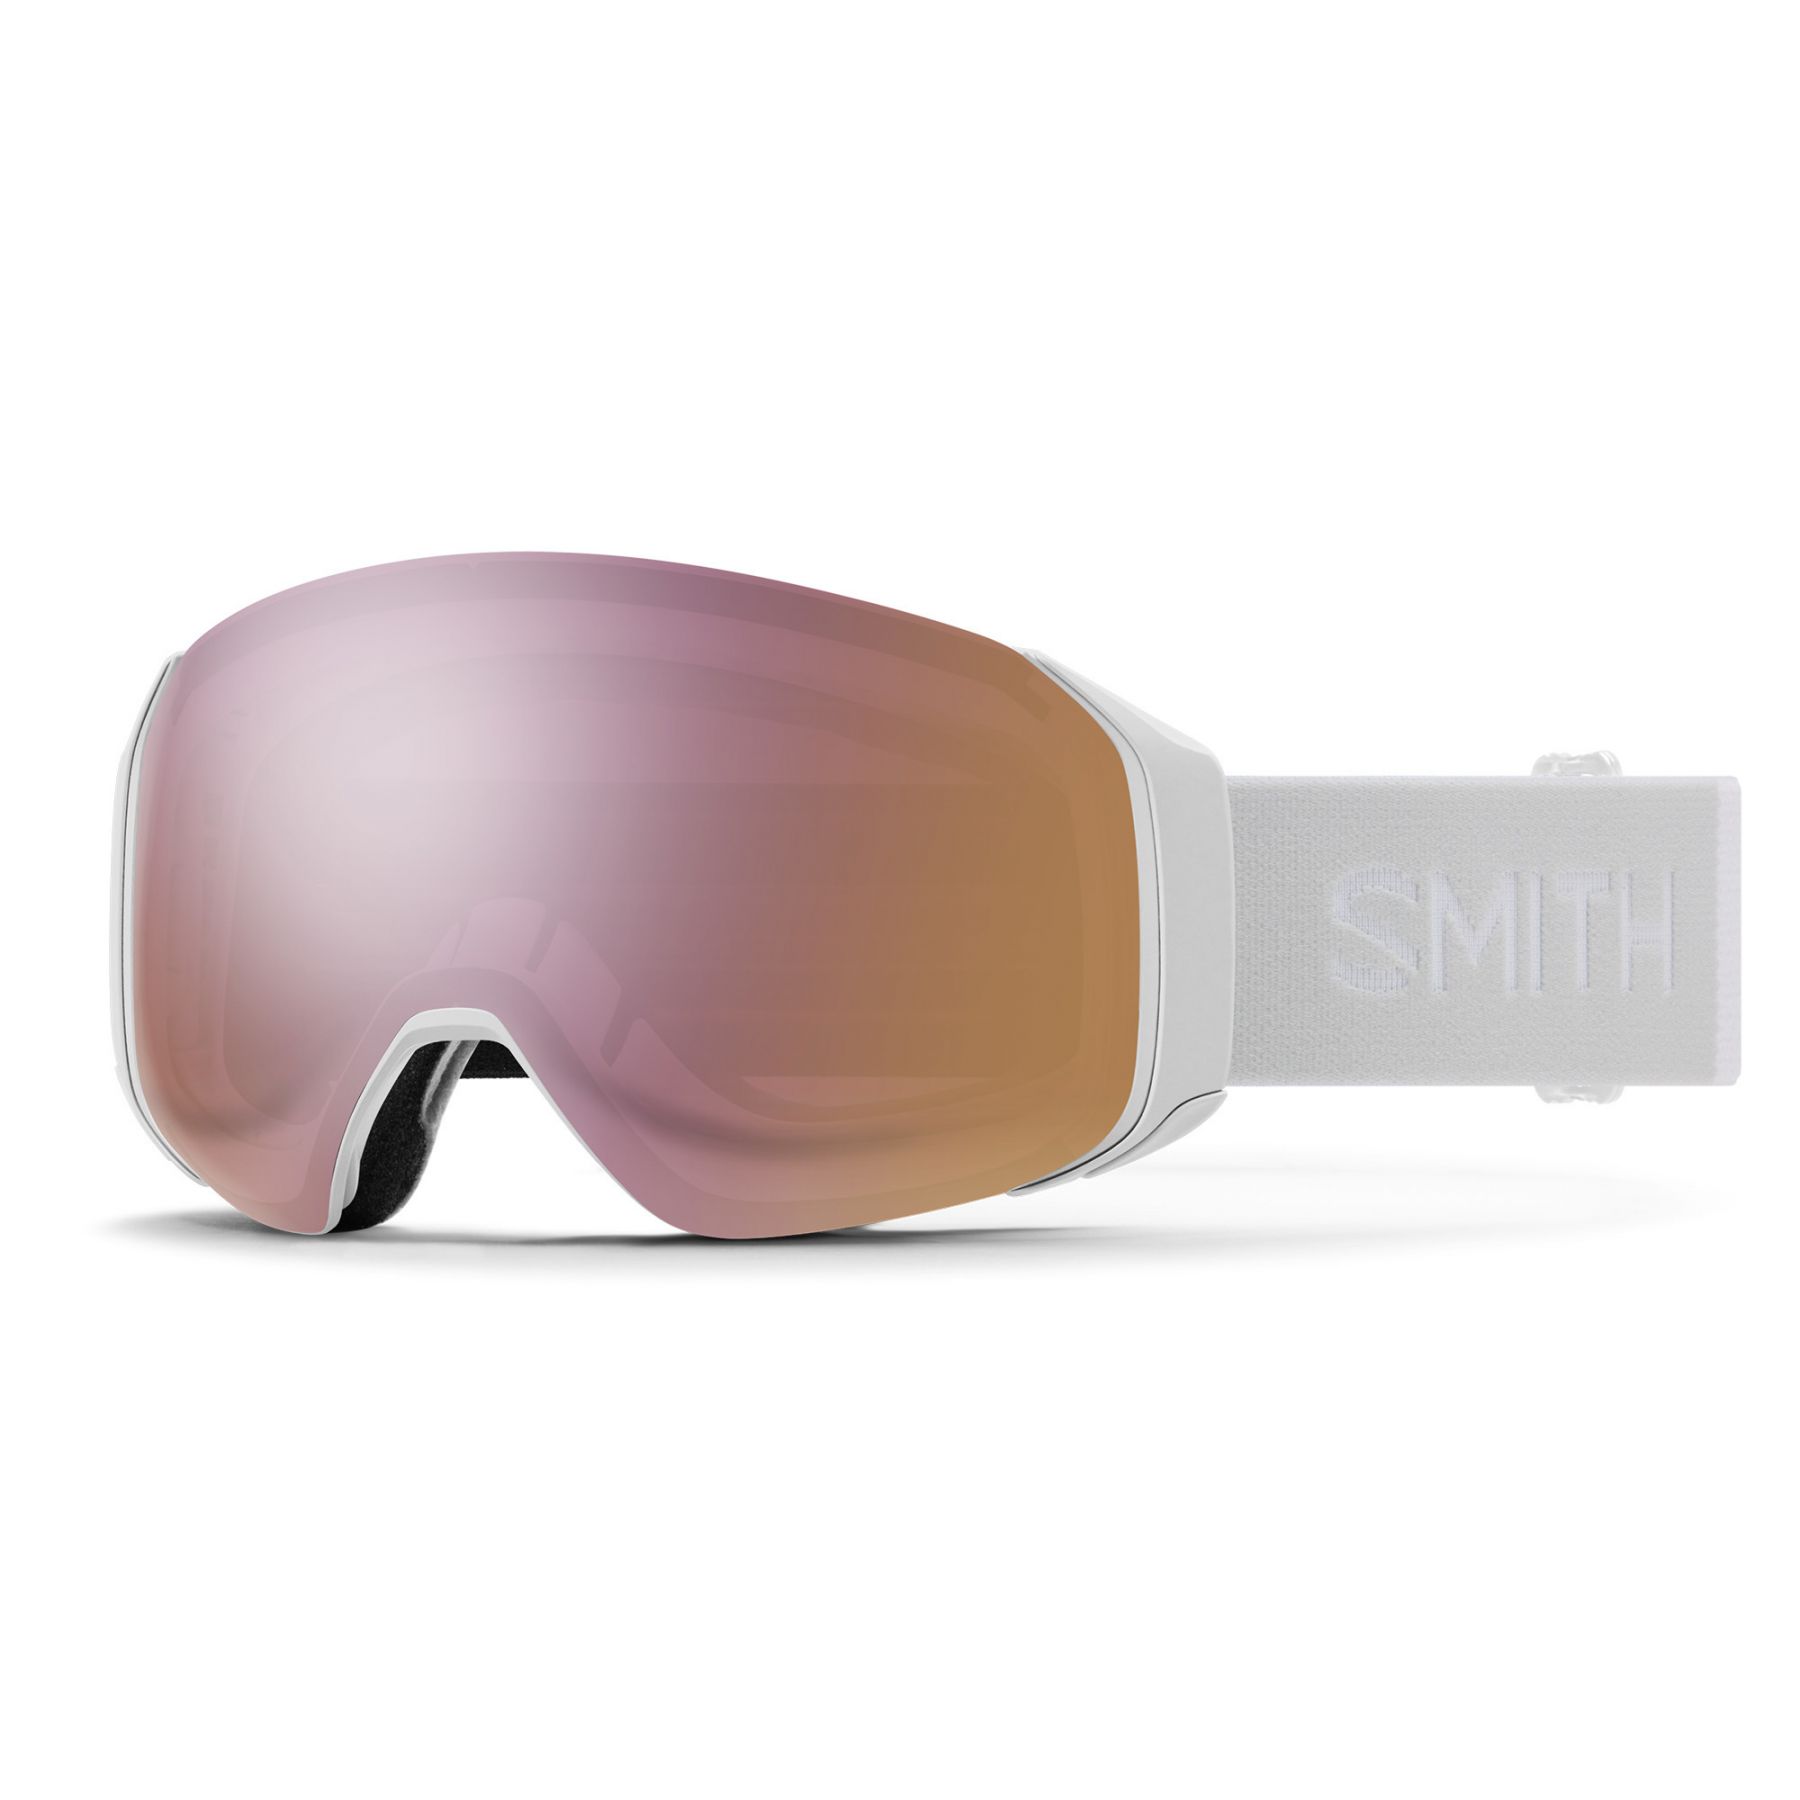 Billede af Smith 4D MAG S, skibrille, hvid hos Skisport.dk